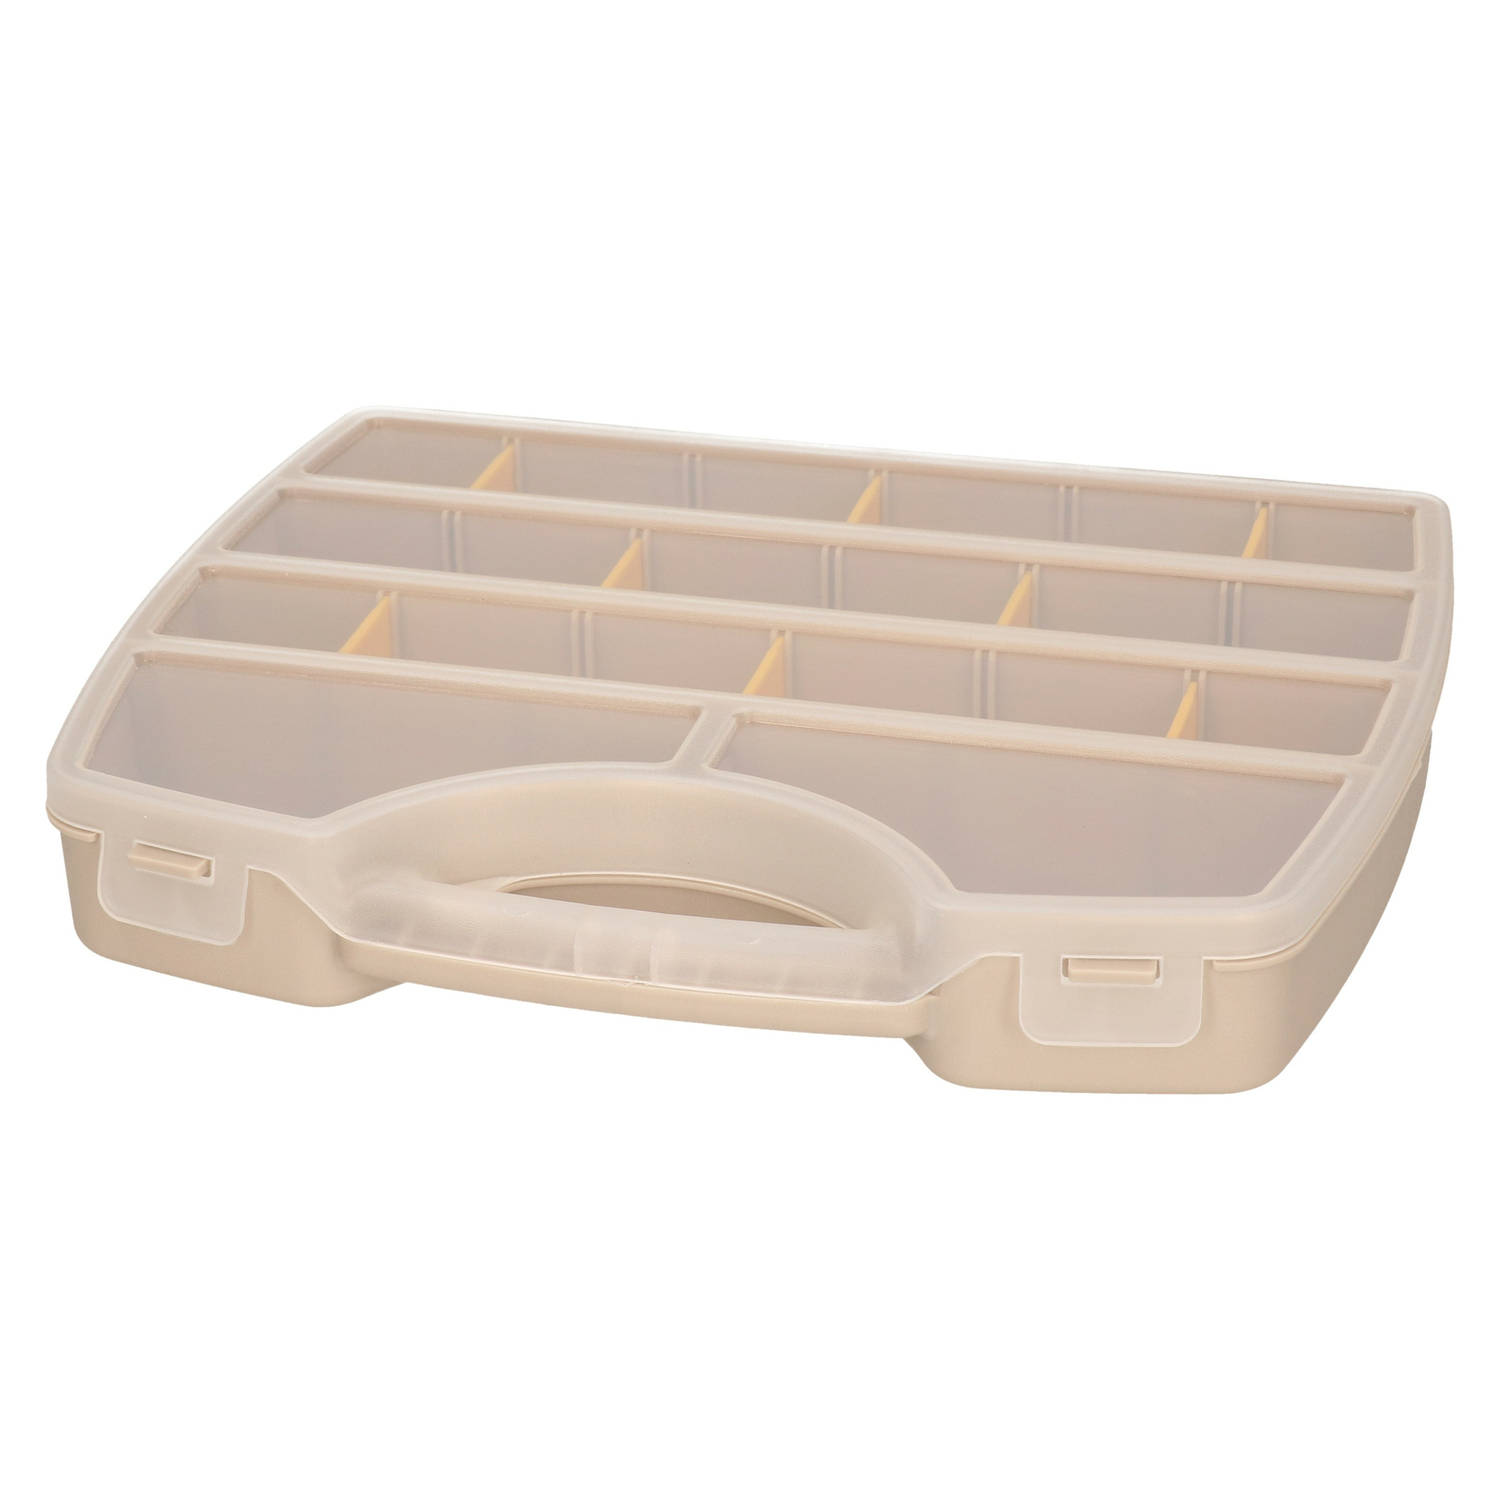 Plasticforte Opbergkoffertje-opbergdoos-sorteerbox 13-vaks kunststof beige 25 x 21 x 4 cm Opbergbox